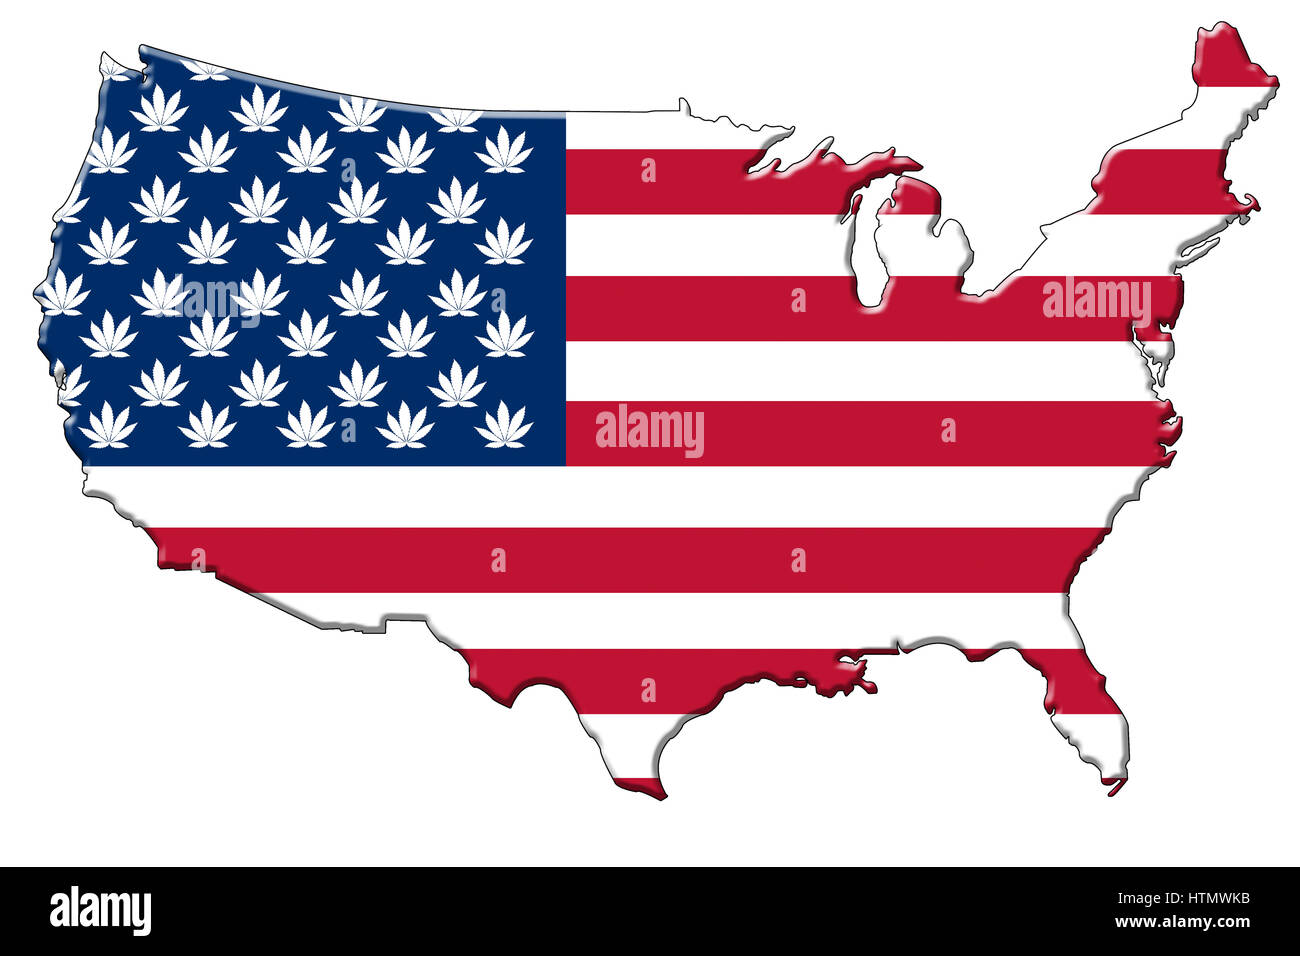 Bandiera americana con foglie di cannabis invece di stelle nella forma del continente degli STATI UNITI D'AMERICA. Foto Stock